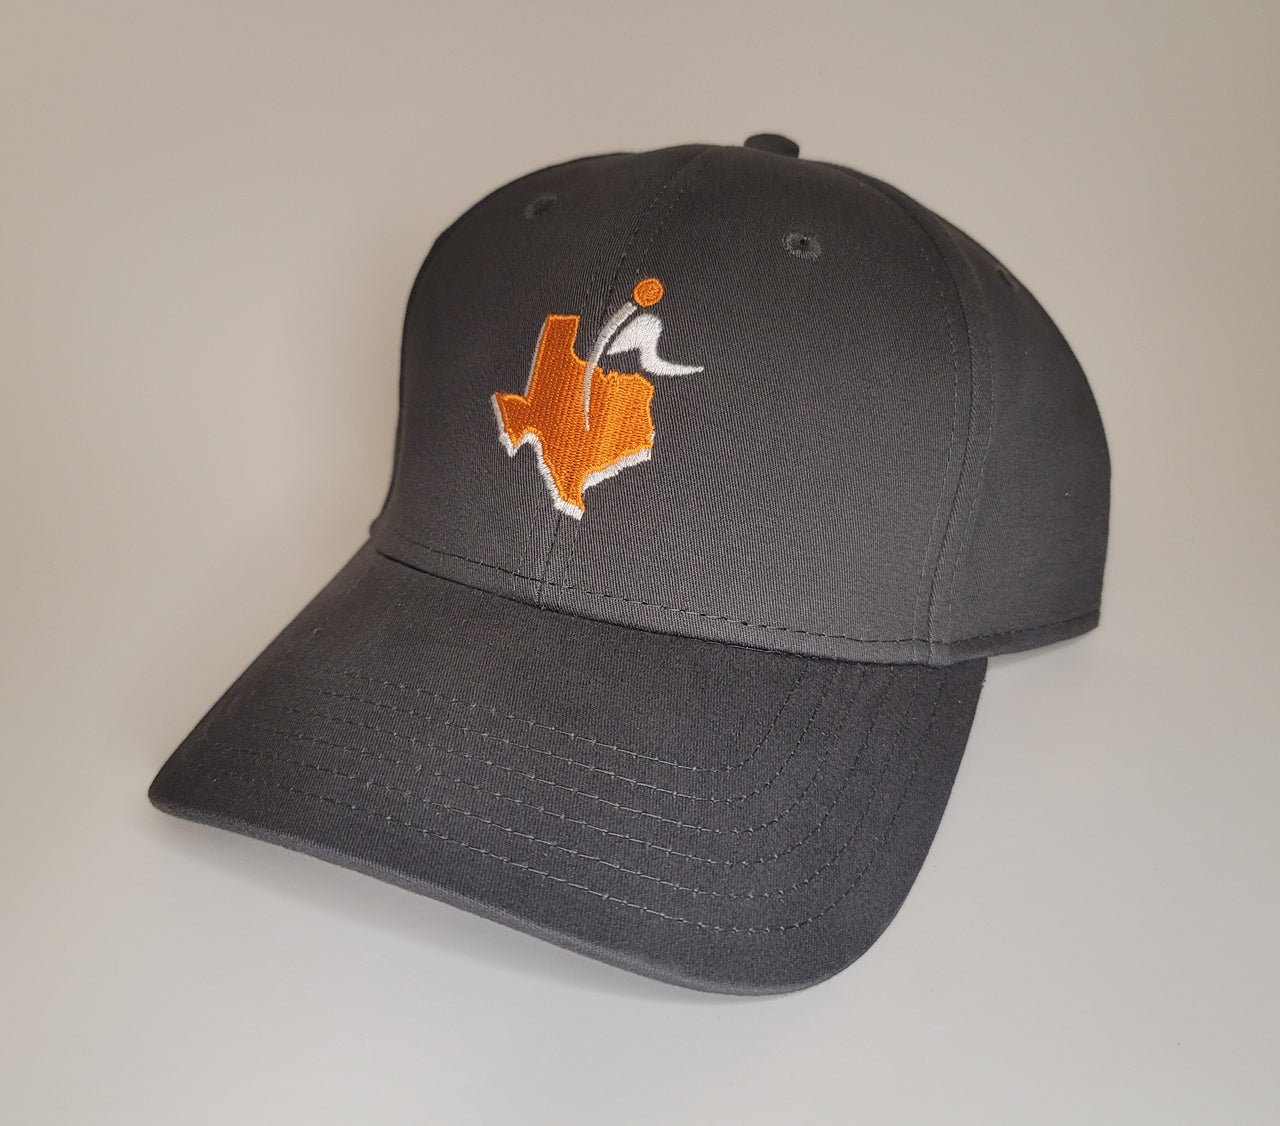 The PYF Club Hat – Austin, Texas